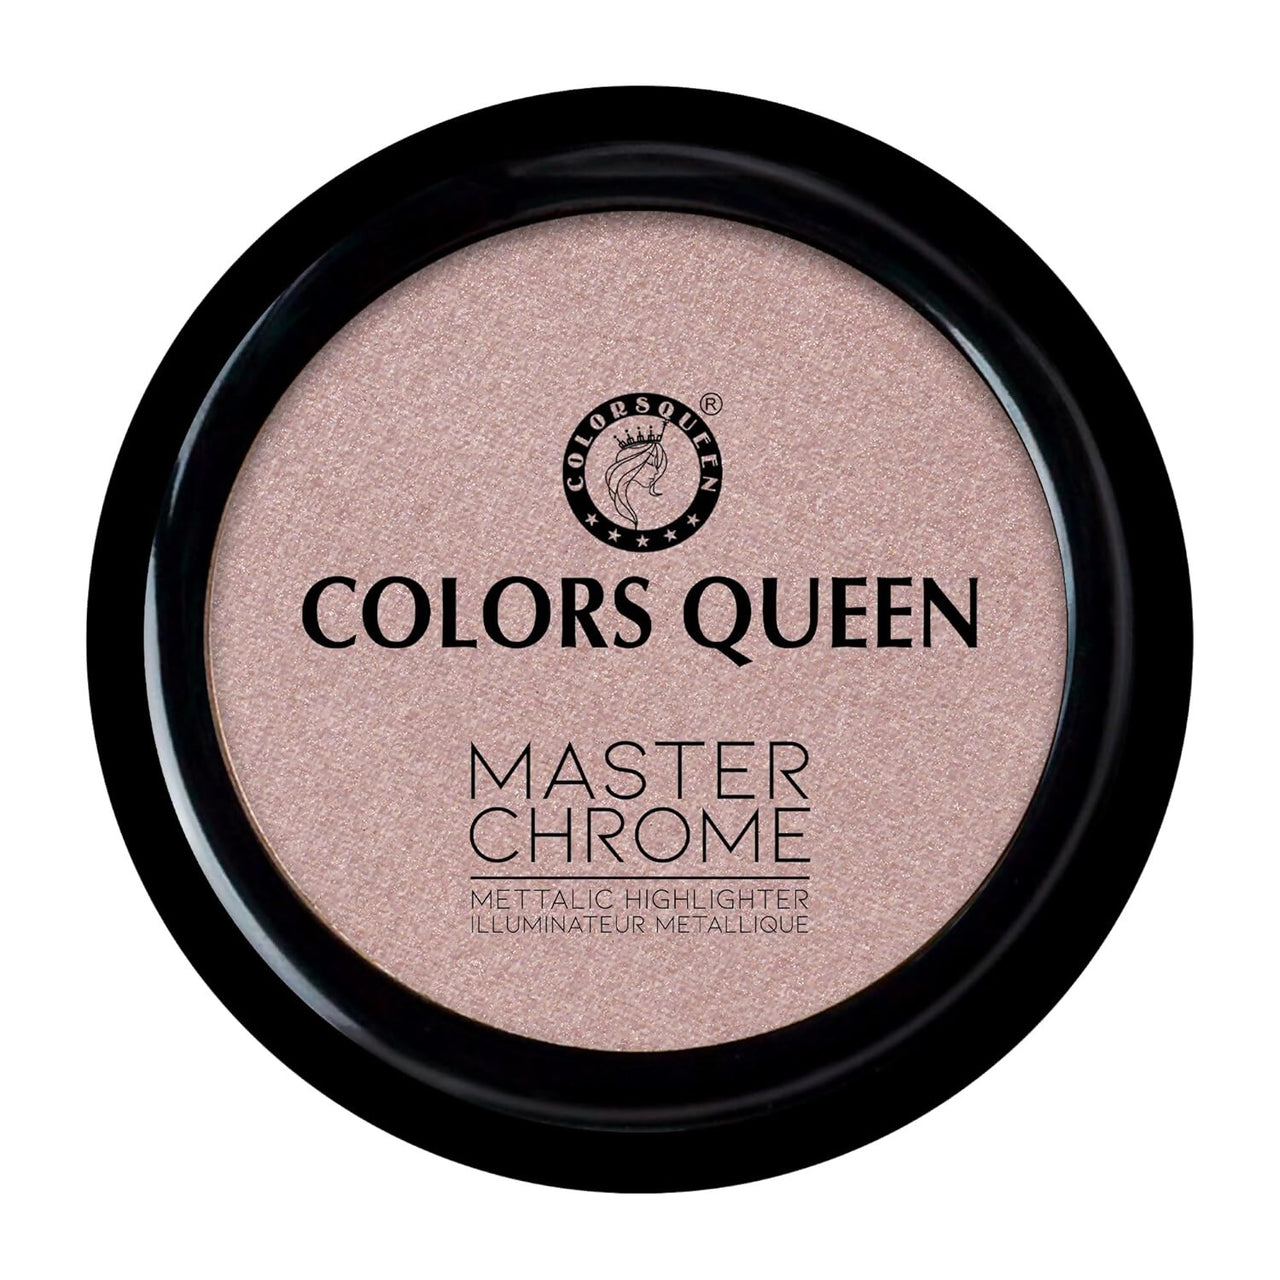 Colors Queen Master Chrome Metallic Highlighter - 04 Worldwide Hit - Distacart